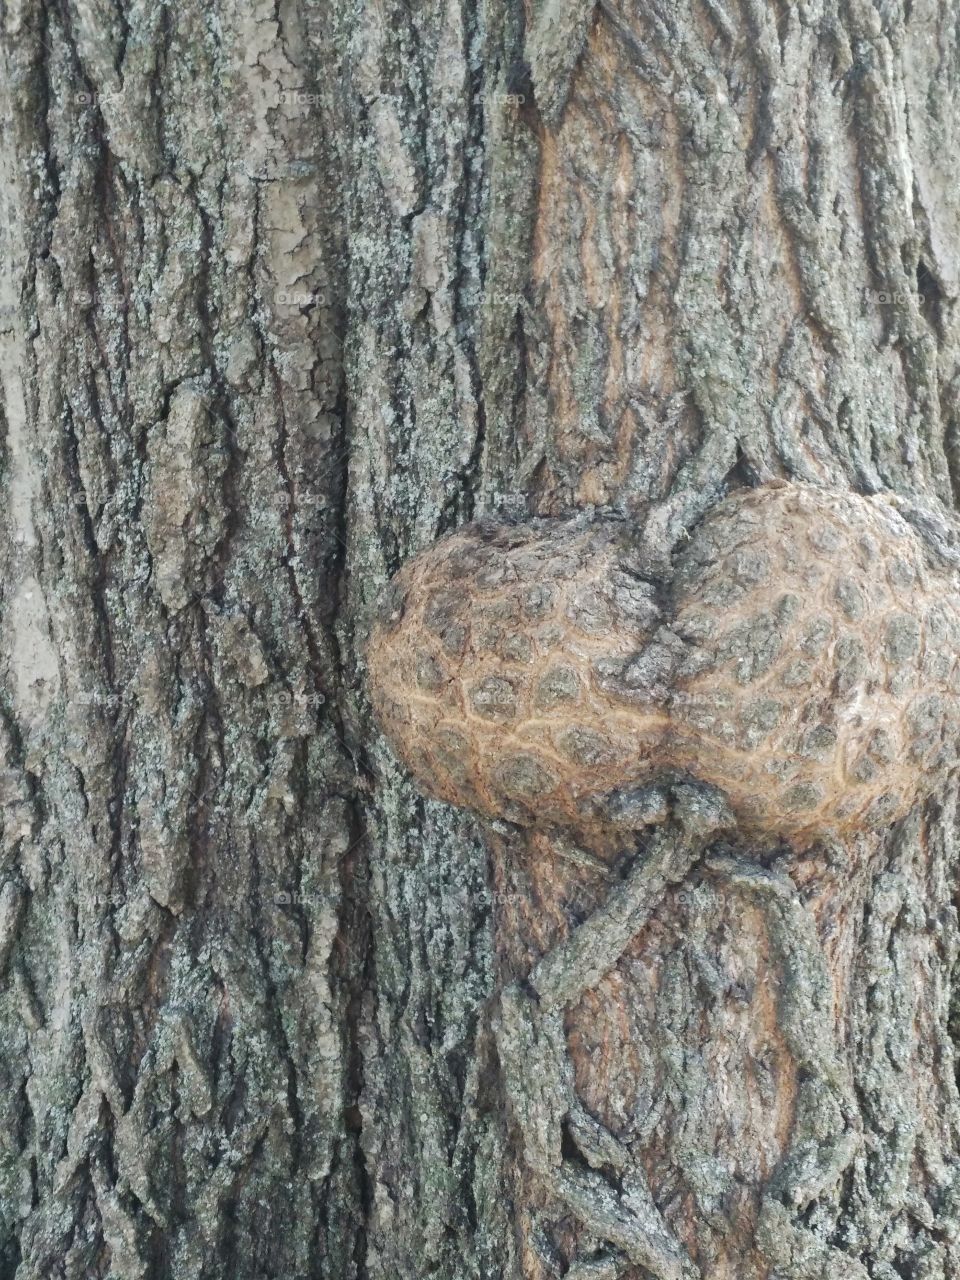 tree butt